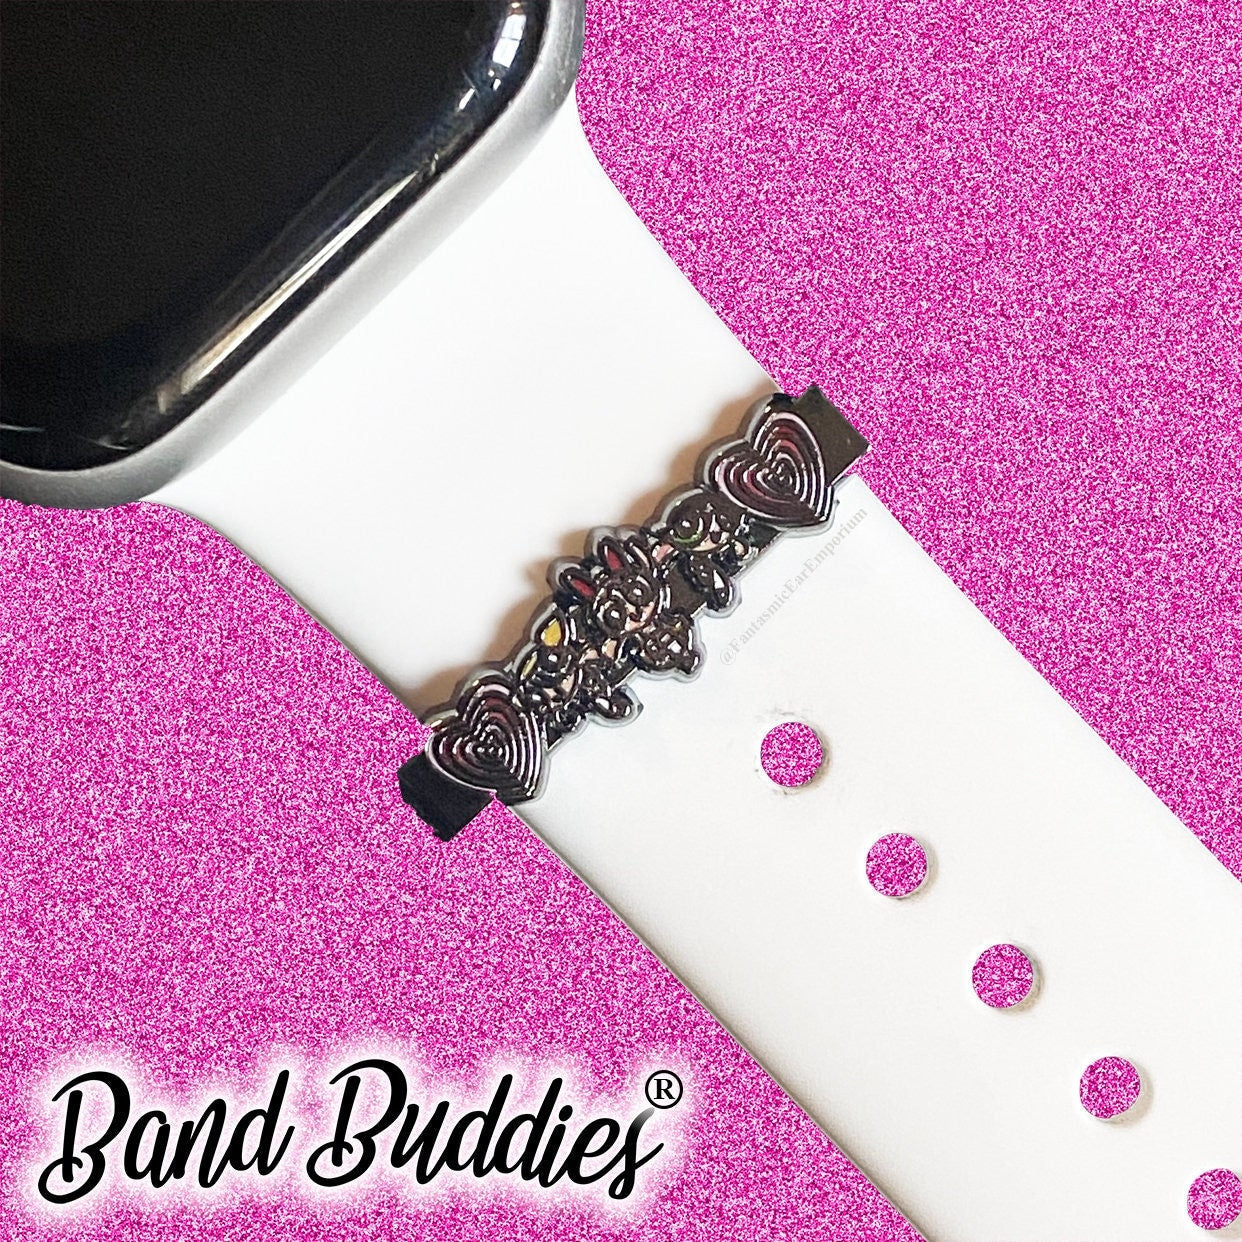 Power Girls Band Buddies® Sliders